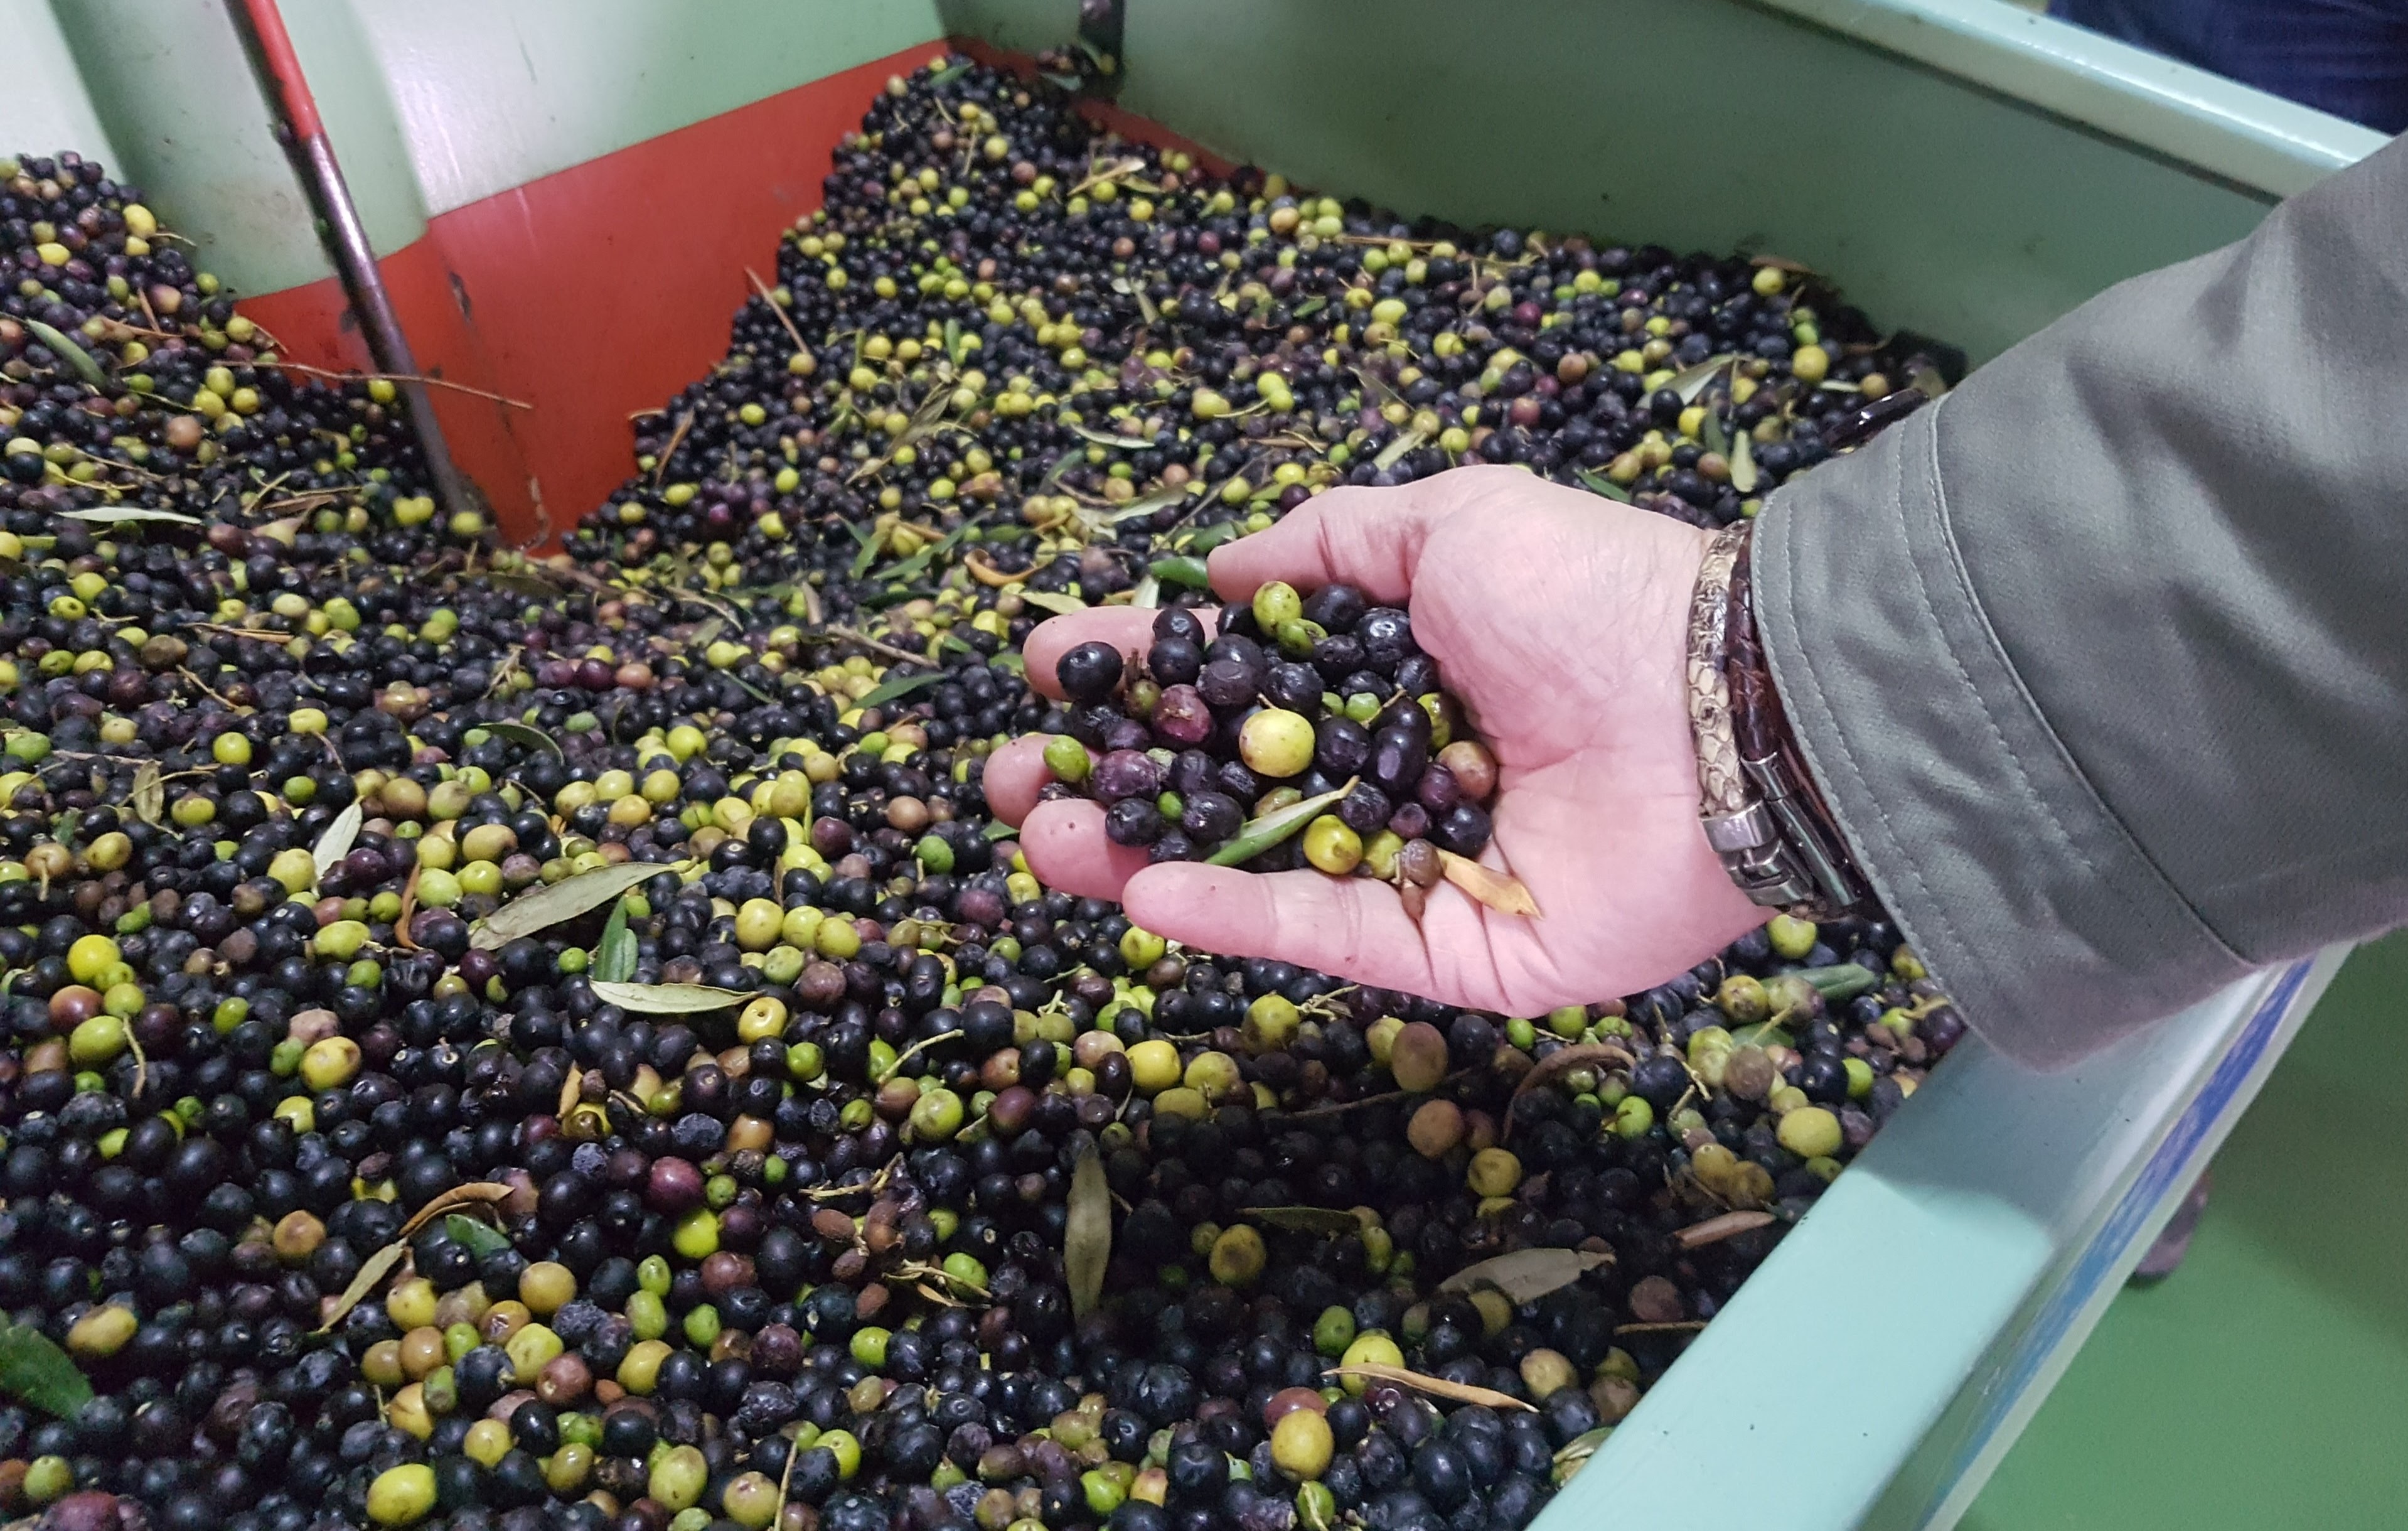 El fruto del olivo llega a la Almazara, para transformarlo en aceite